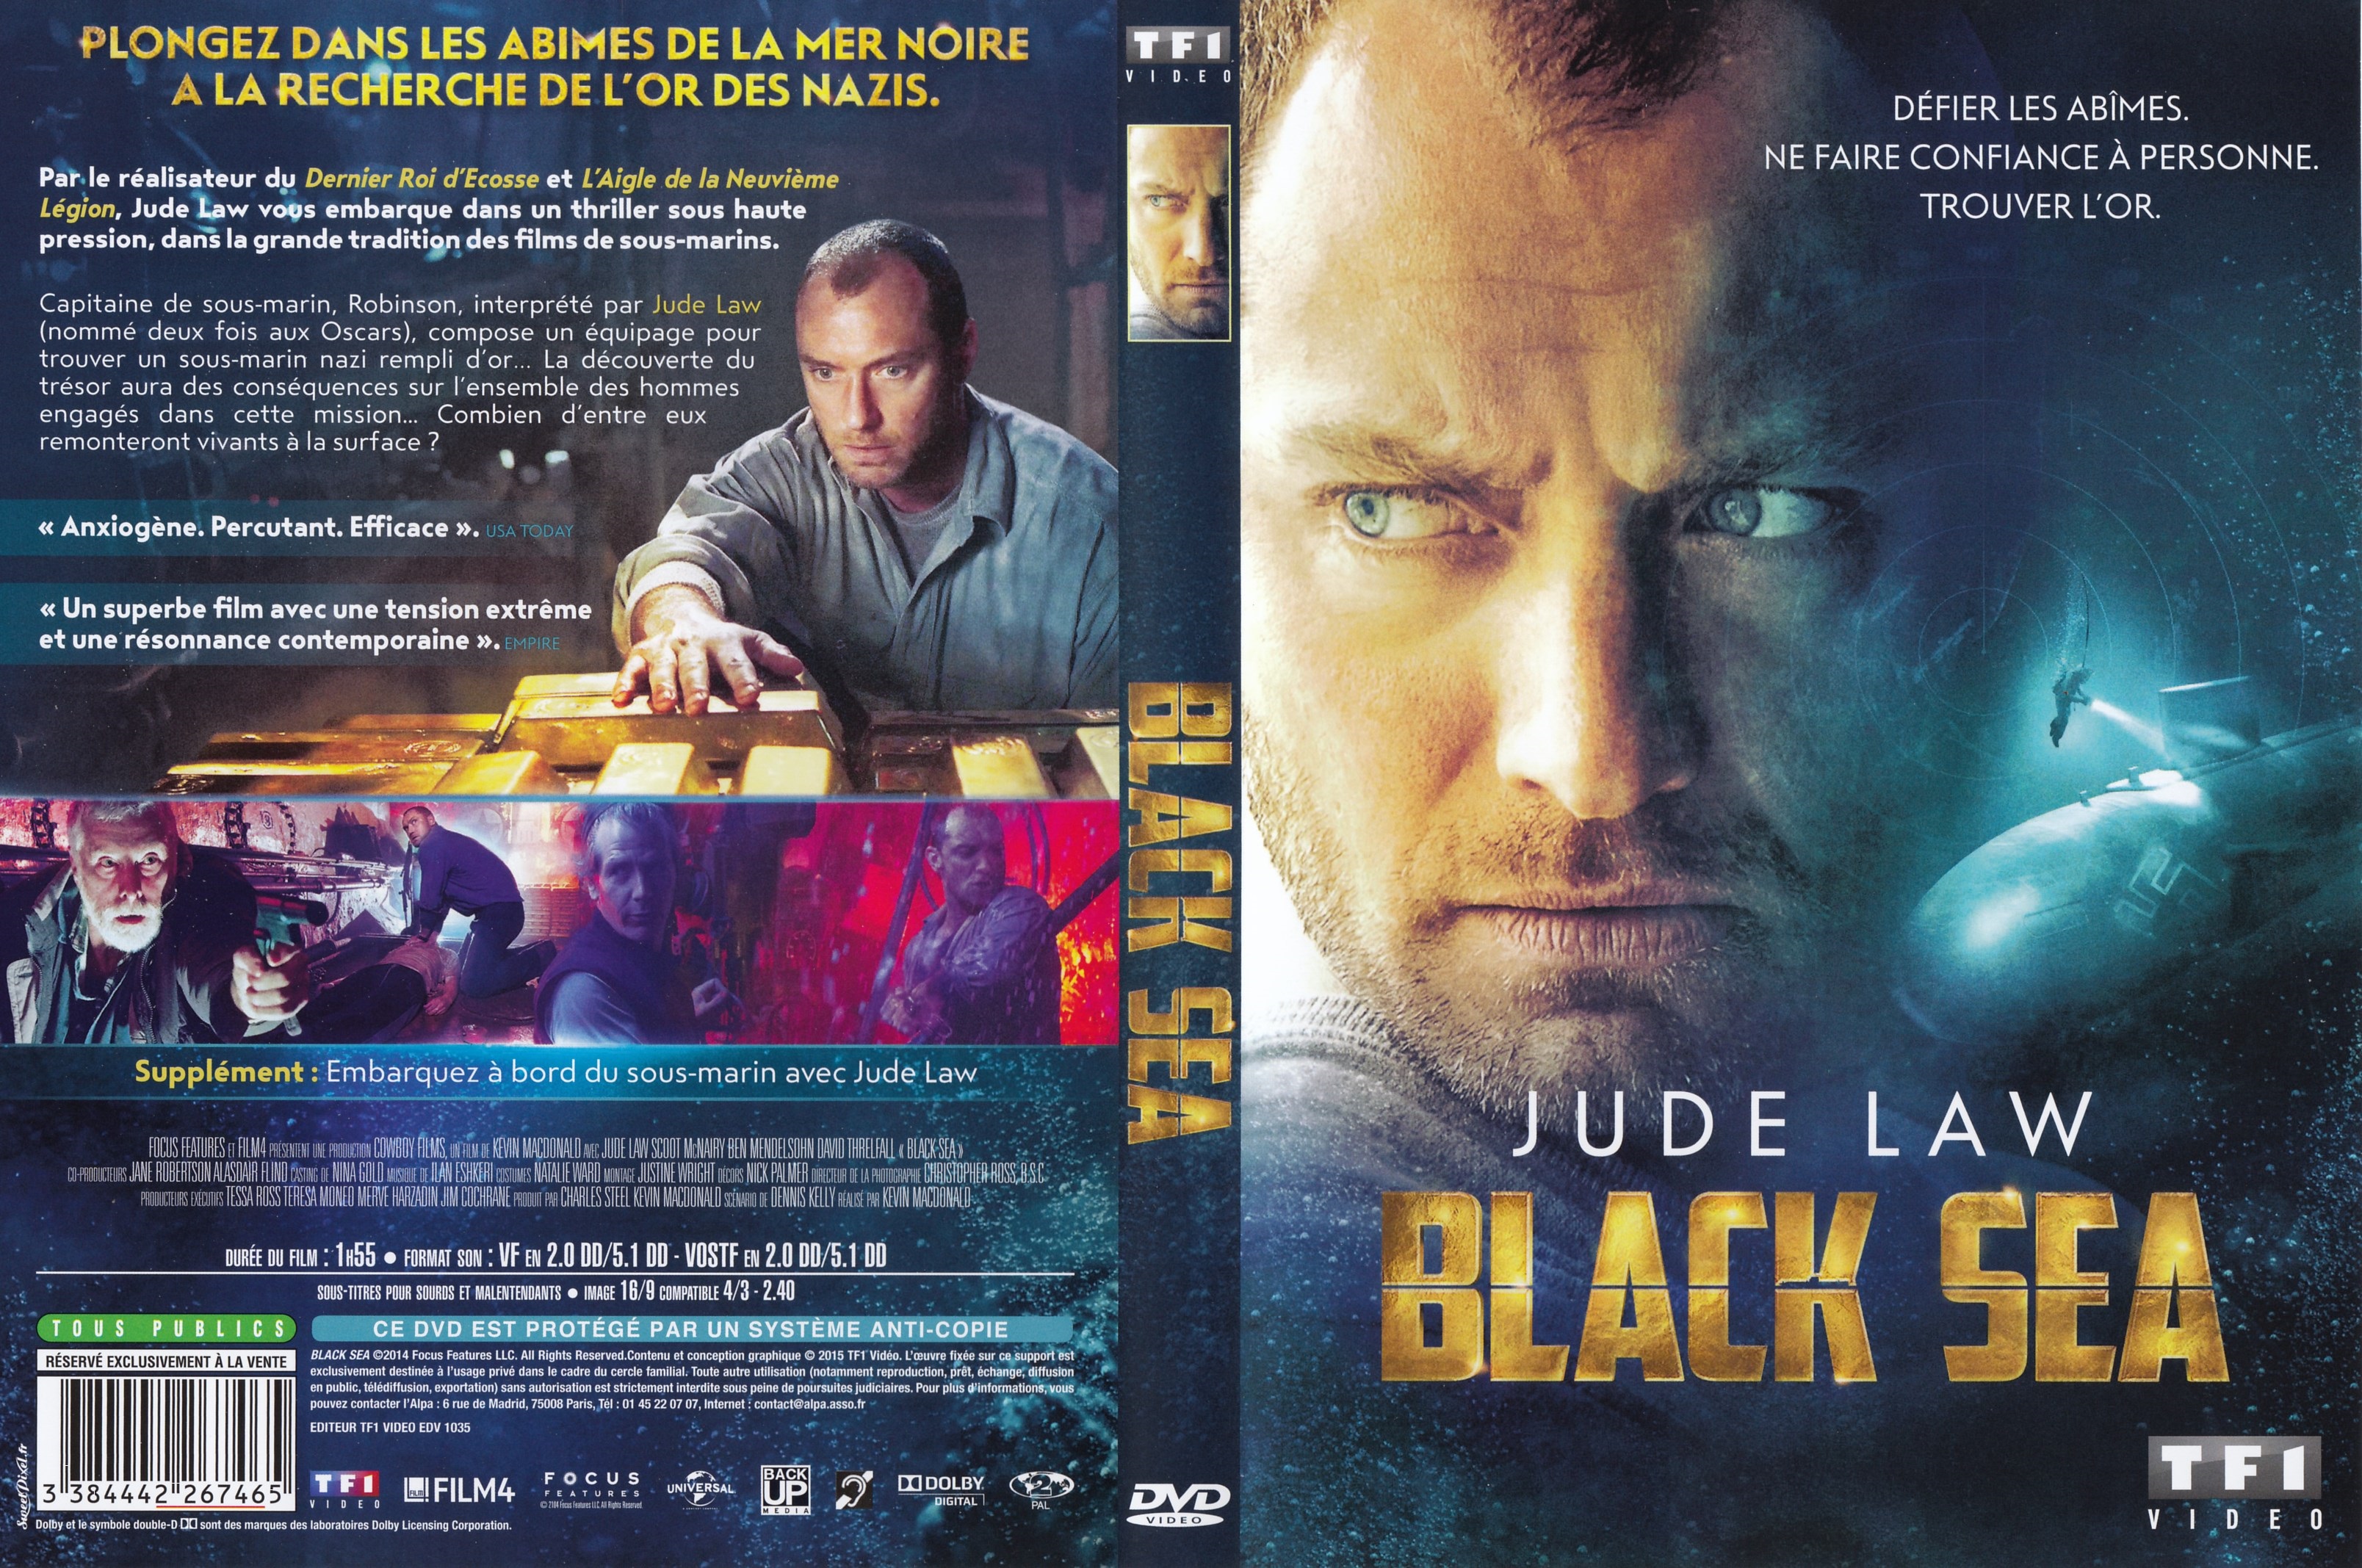 Jaquette DVD Black sea